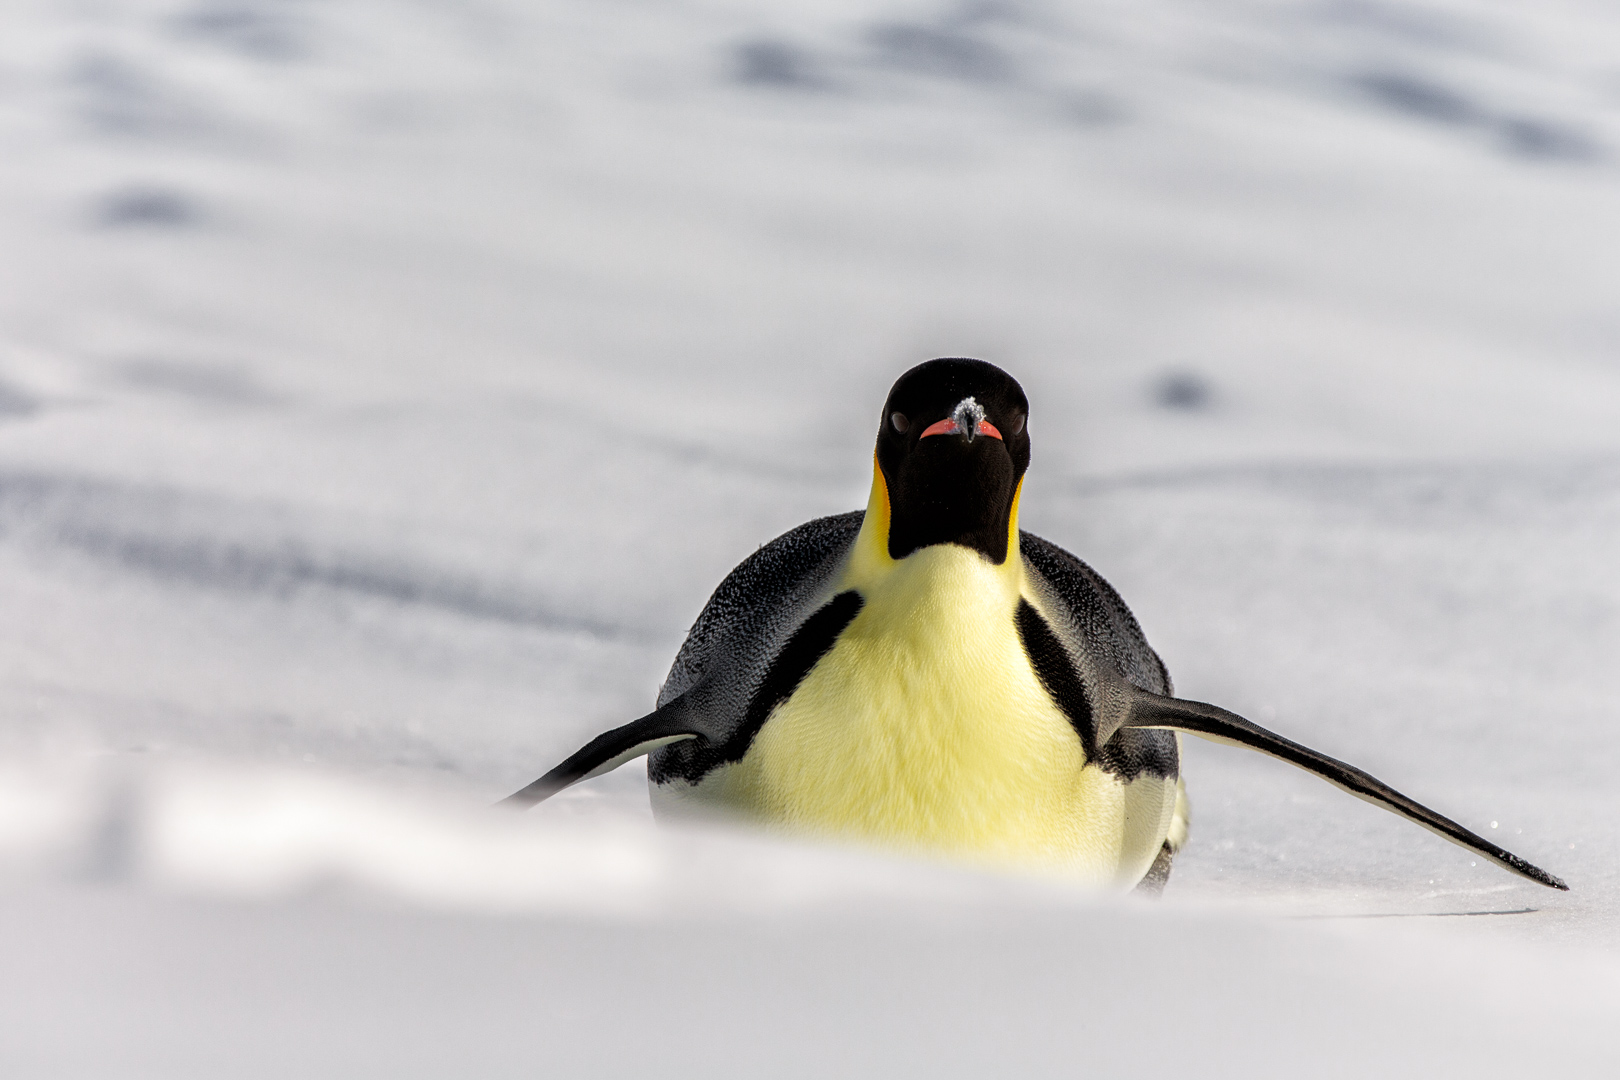 Antarctica - The emperor penguin (Aptenodytes forsteri) - Canon EOS 5D III / EF 70-200mm f/2.8 L IS II USM +2.0x III